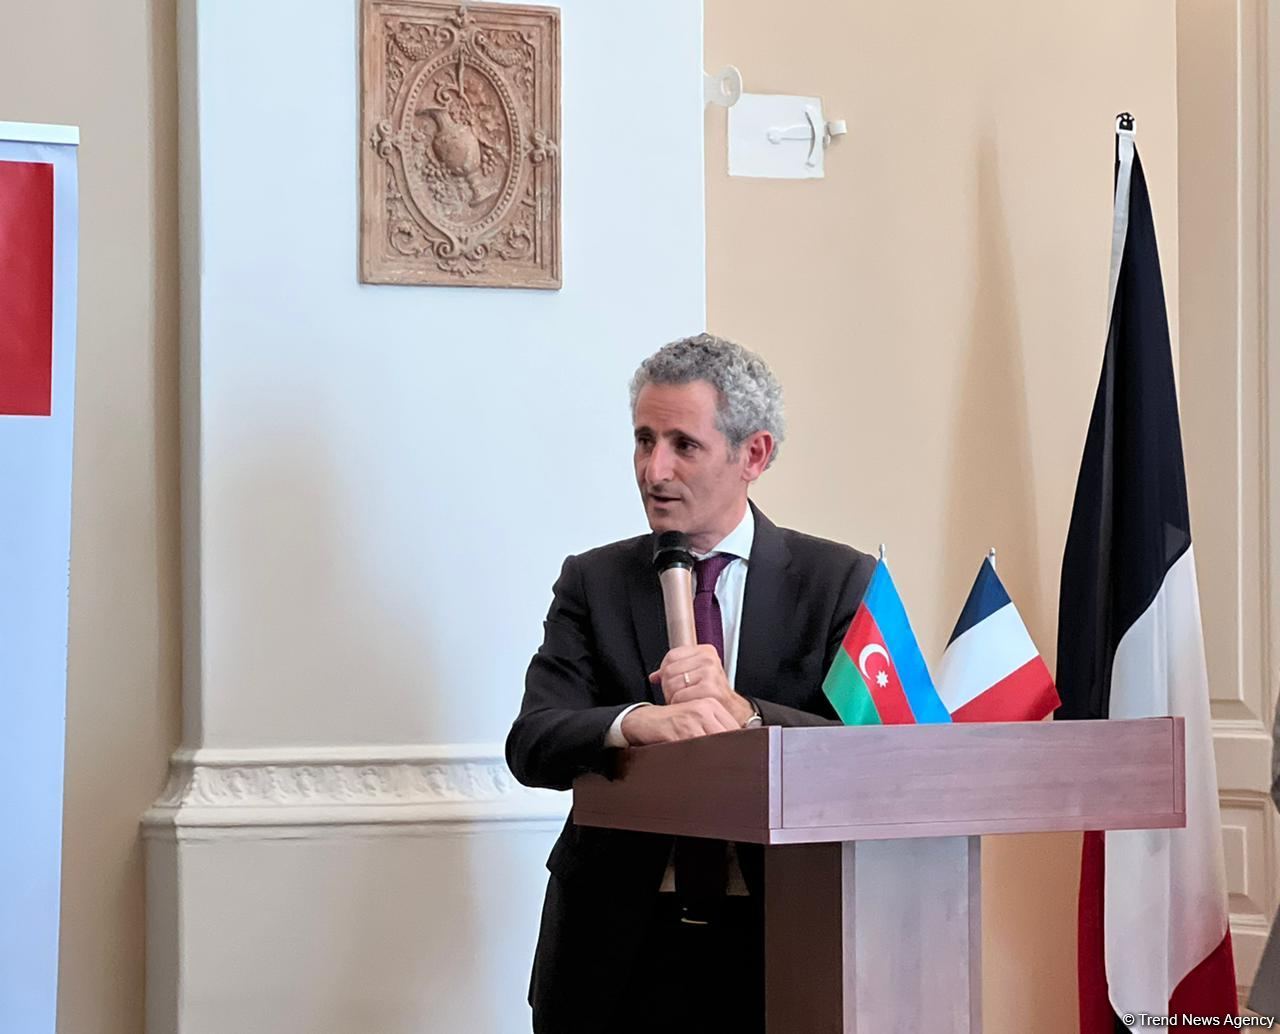 Франция продвигает новые образовательные проекты в Азербайджане - посол